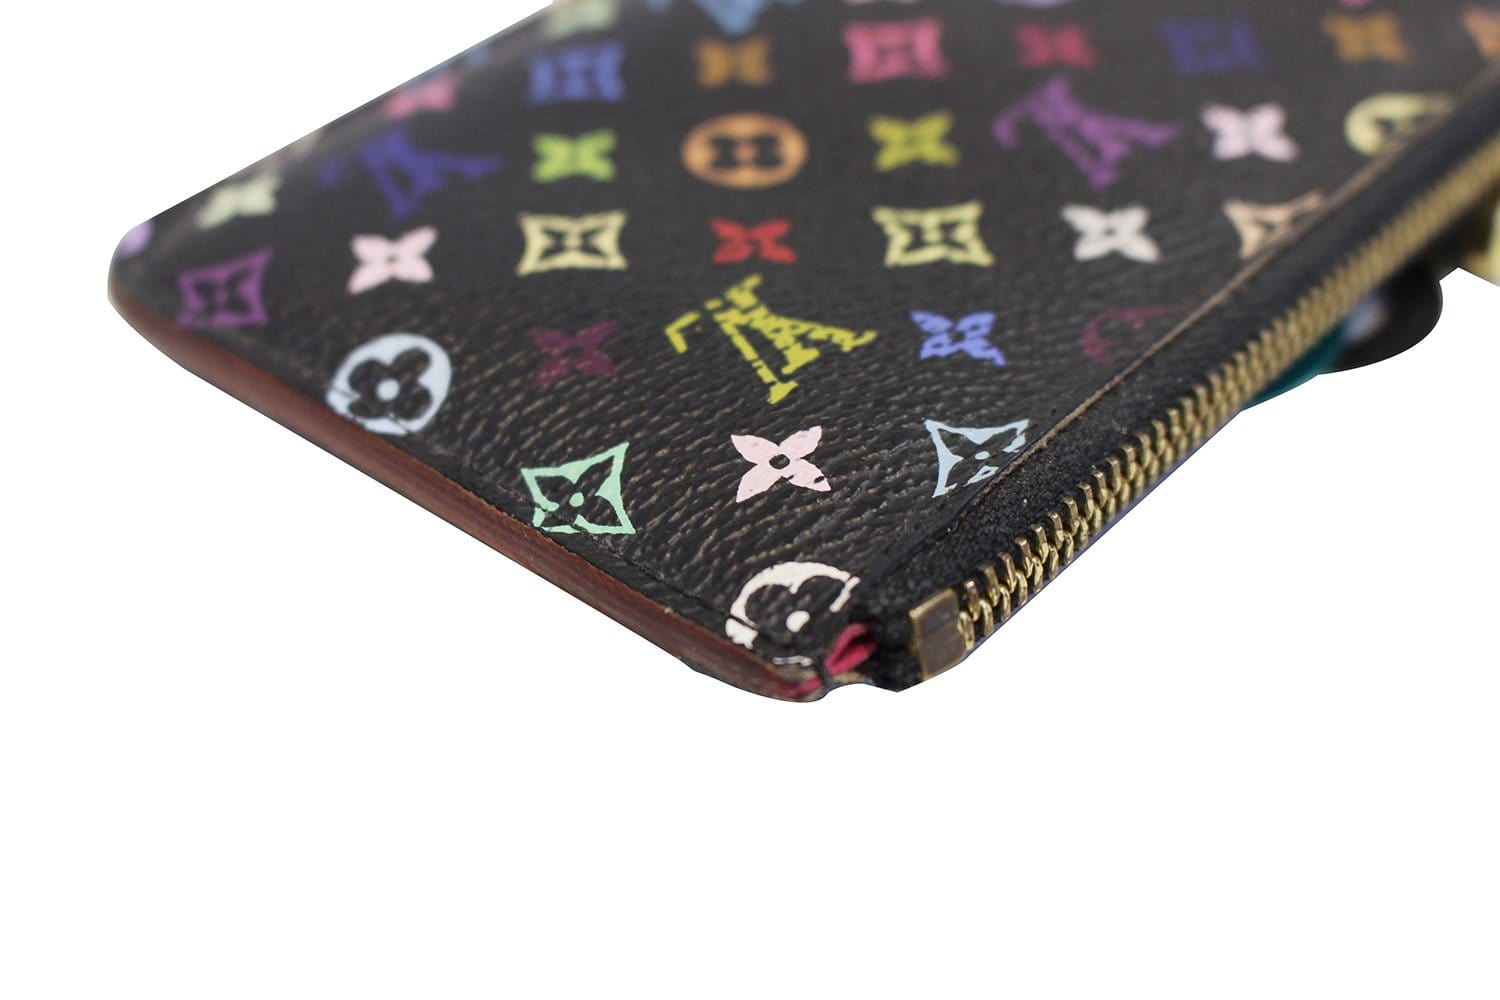 Louis Vuitton Black Monogram Multicolor Key Pouch Pochette Cles Keychain 861972